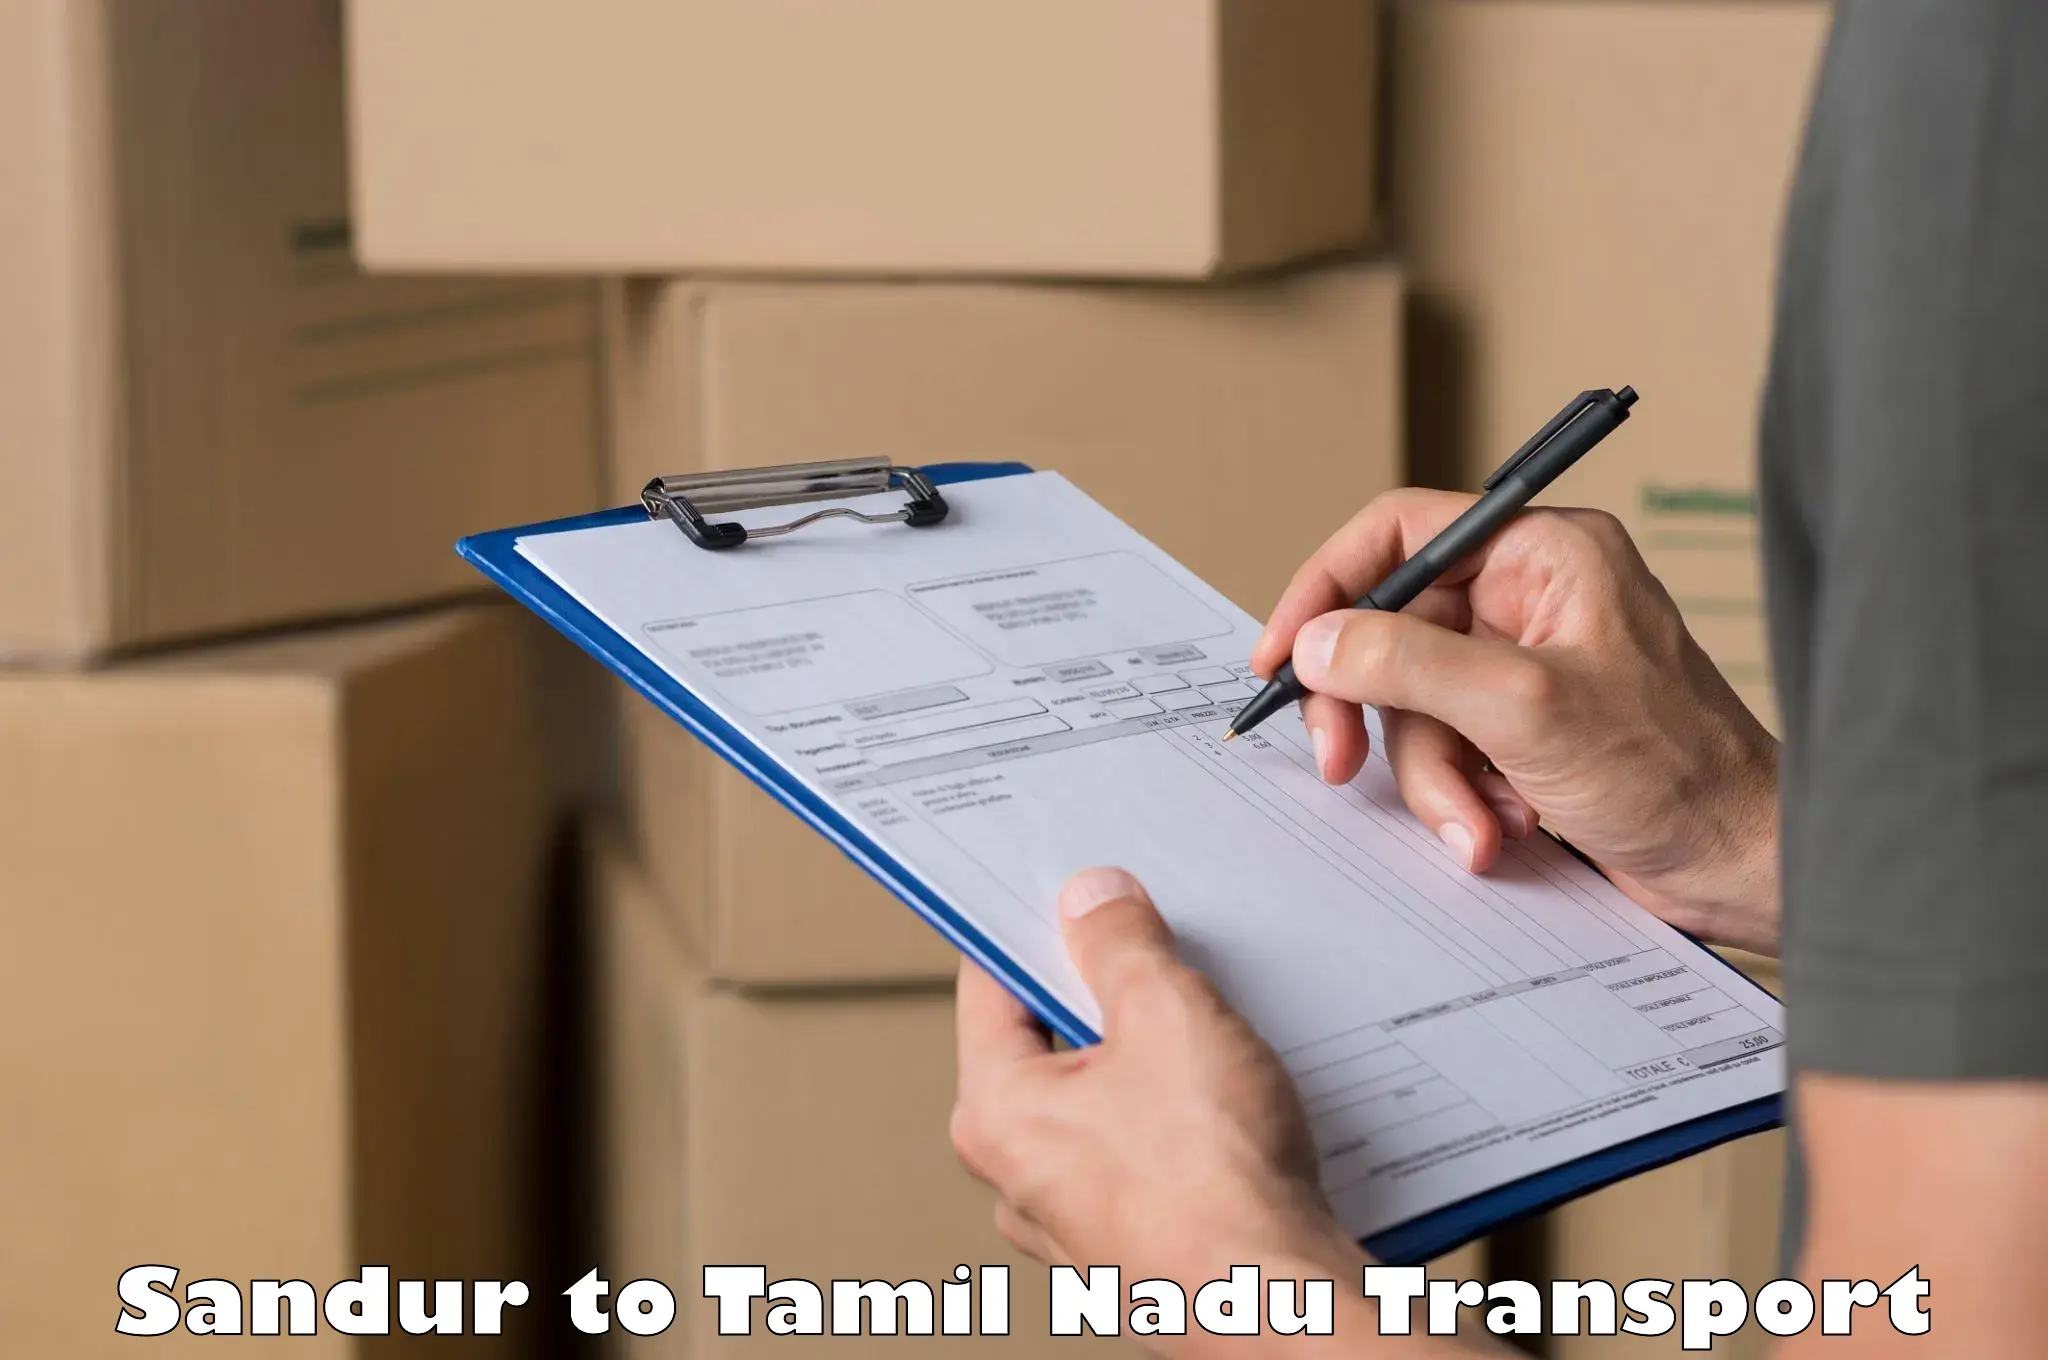 Nearest transport service Sandur to IIIT Tiruchirappalli